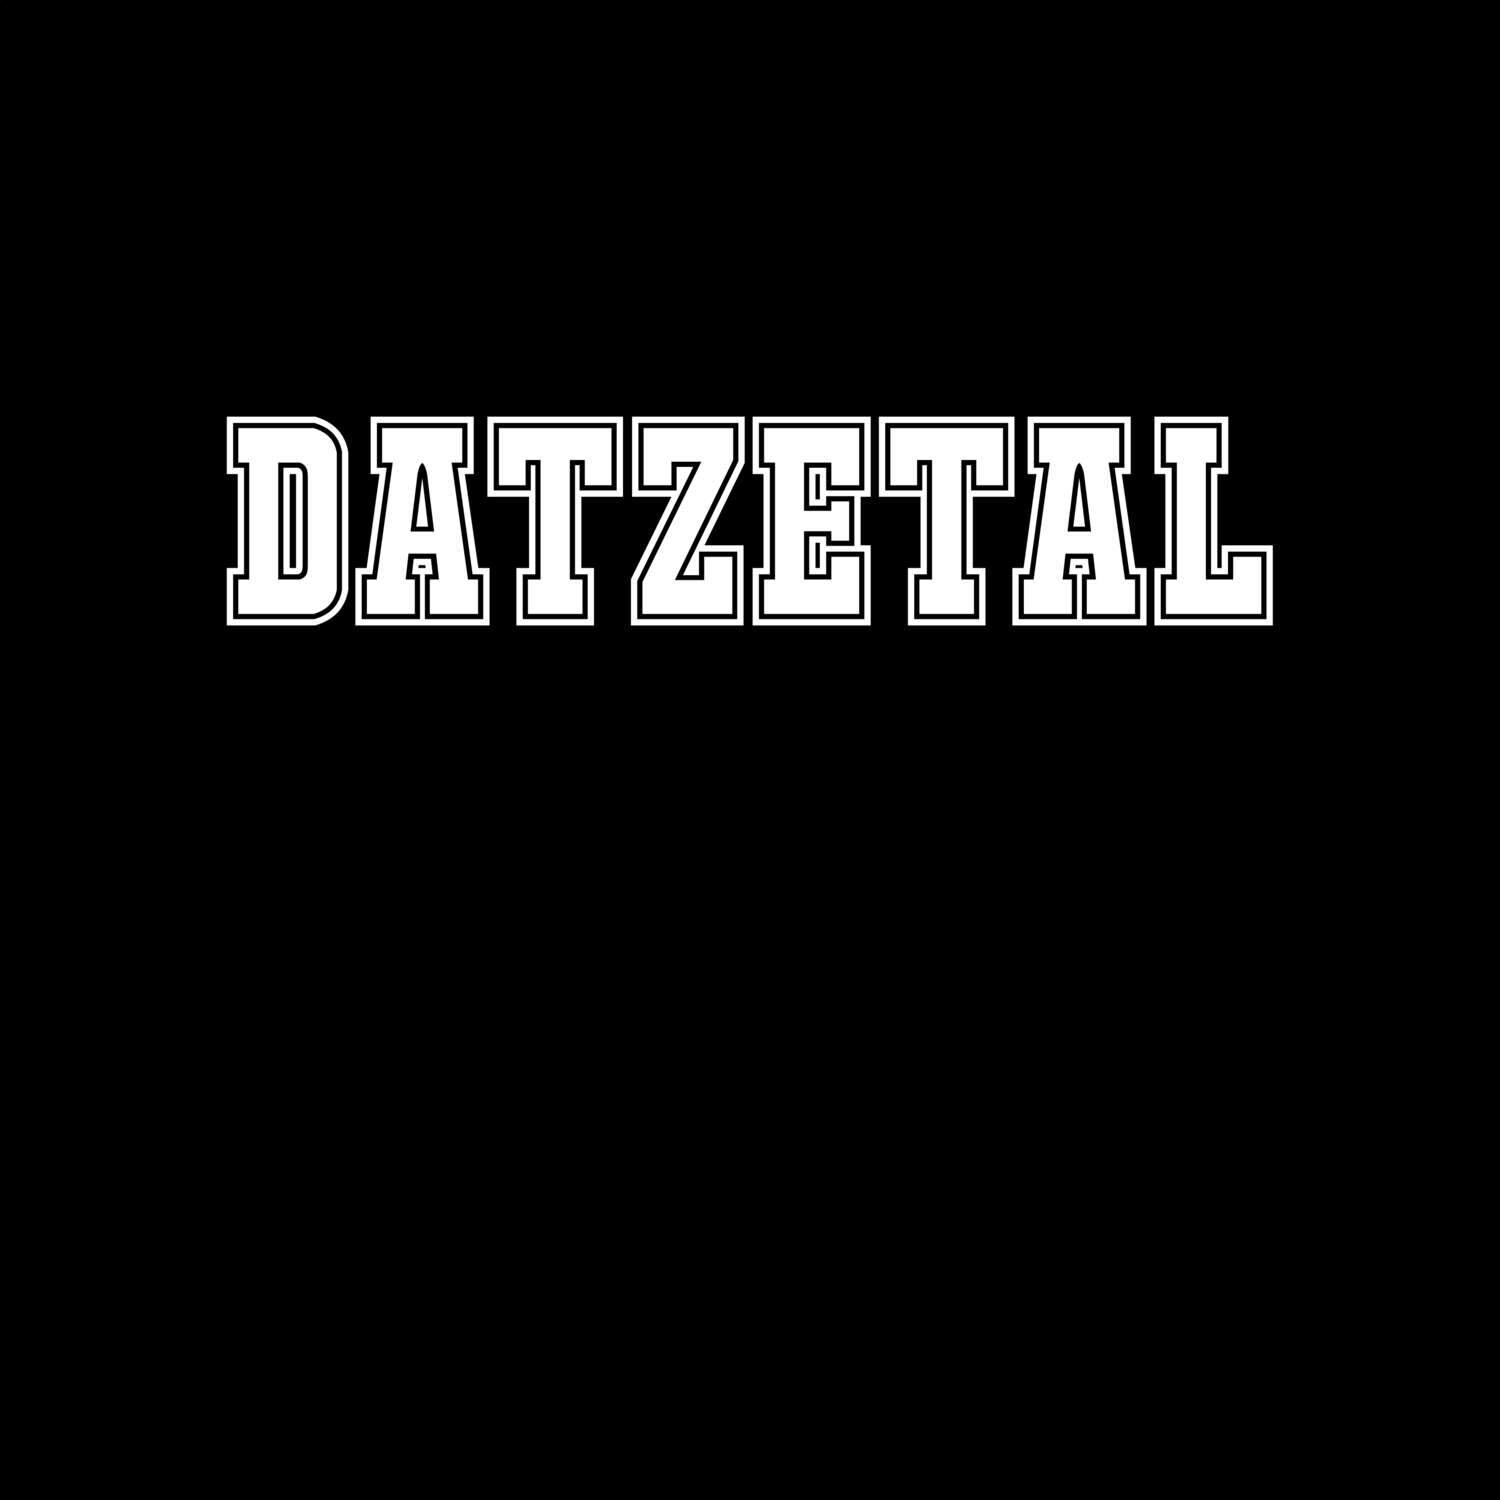 Datzetal T-Shirt »Classic«